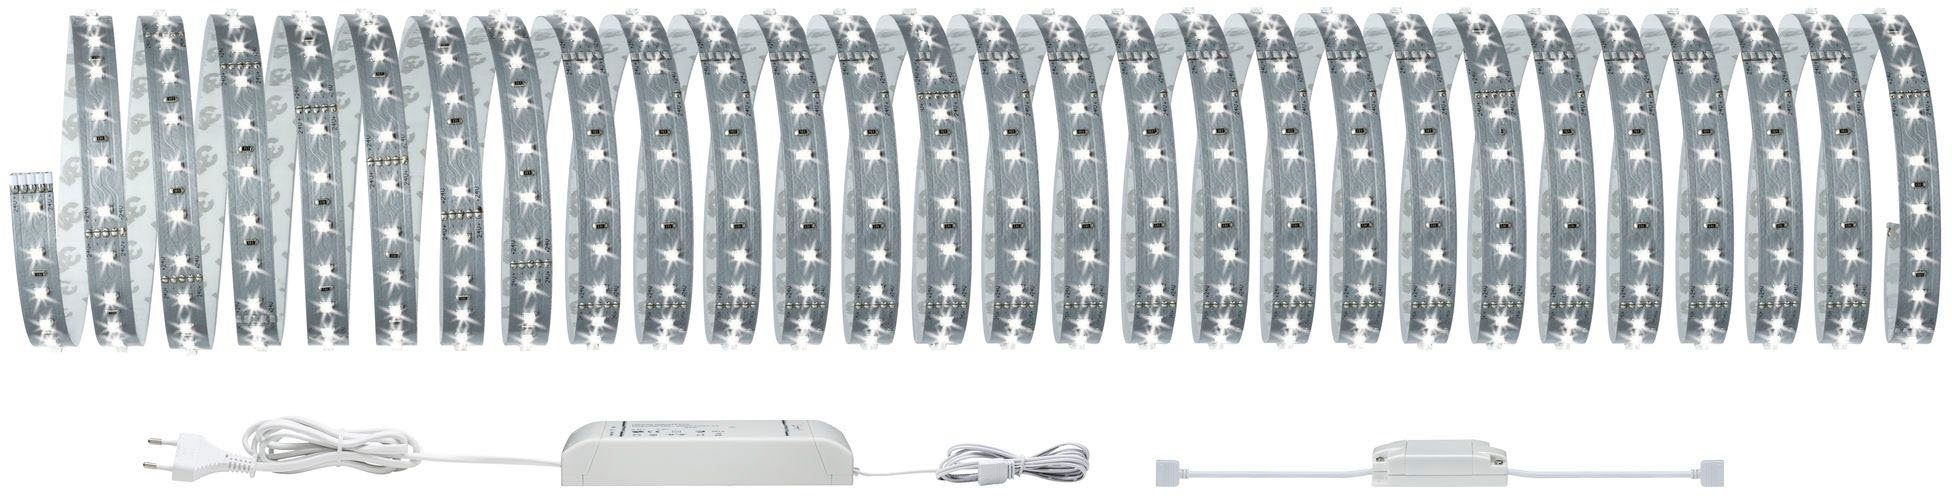 LED-Streifen Home 6500K, Paulmann Tageslichtweiß 50W 10m Basisset Smart 550lm/m MaxLED 1-flammig, Basisset 500